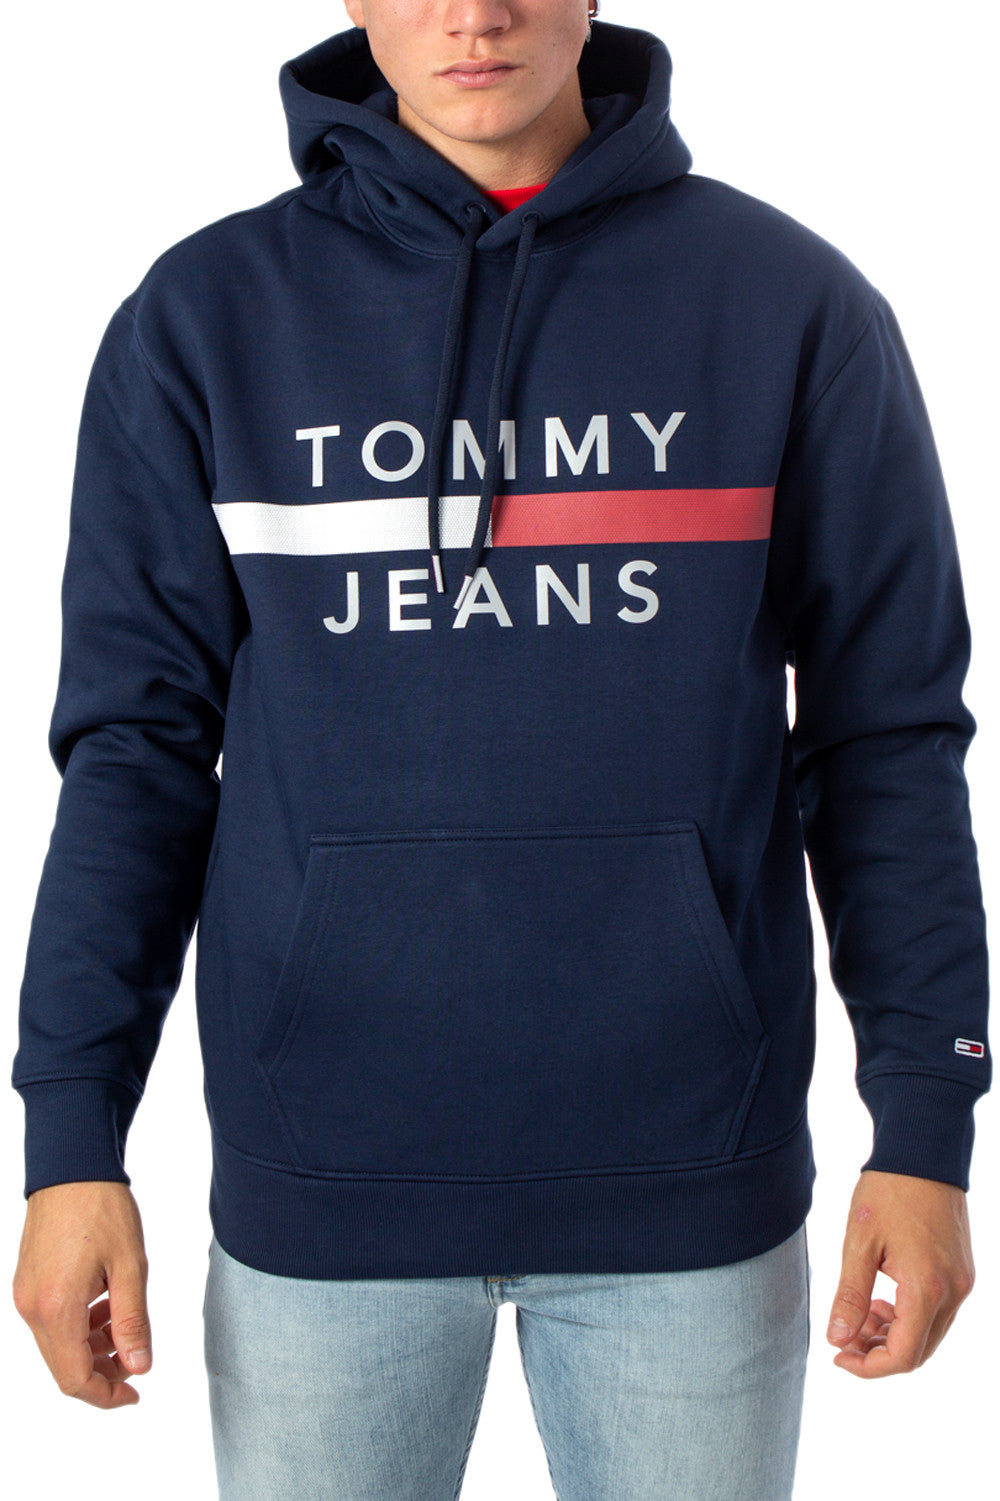 tommy hilfiger men's sweatshirts